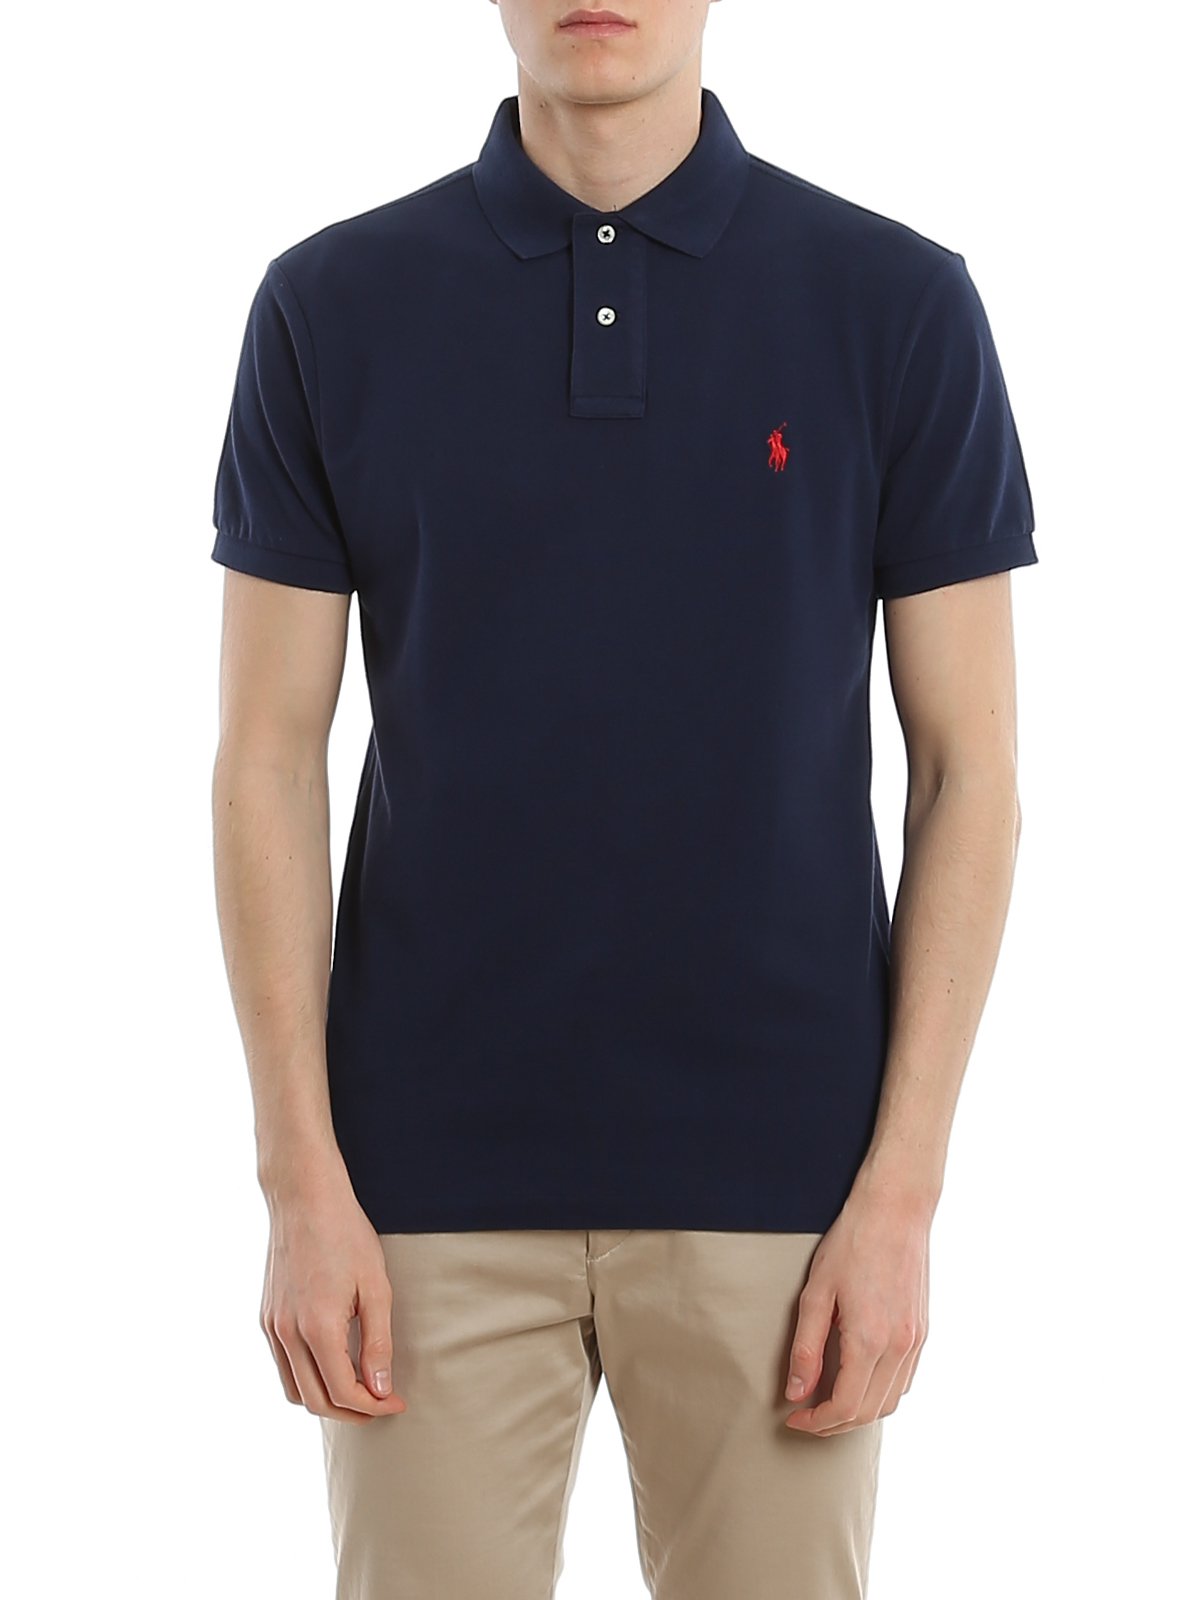 shirts Ralph Lauren - Branded shirt - 710795080007